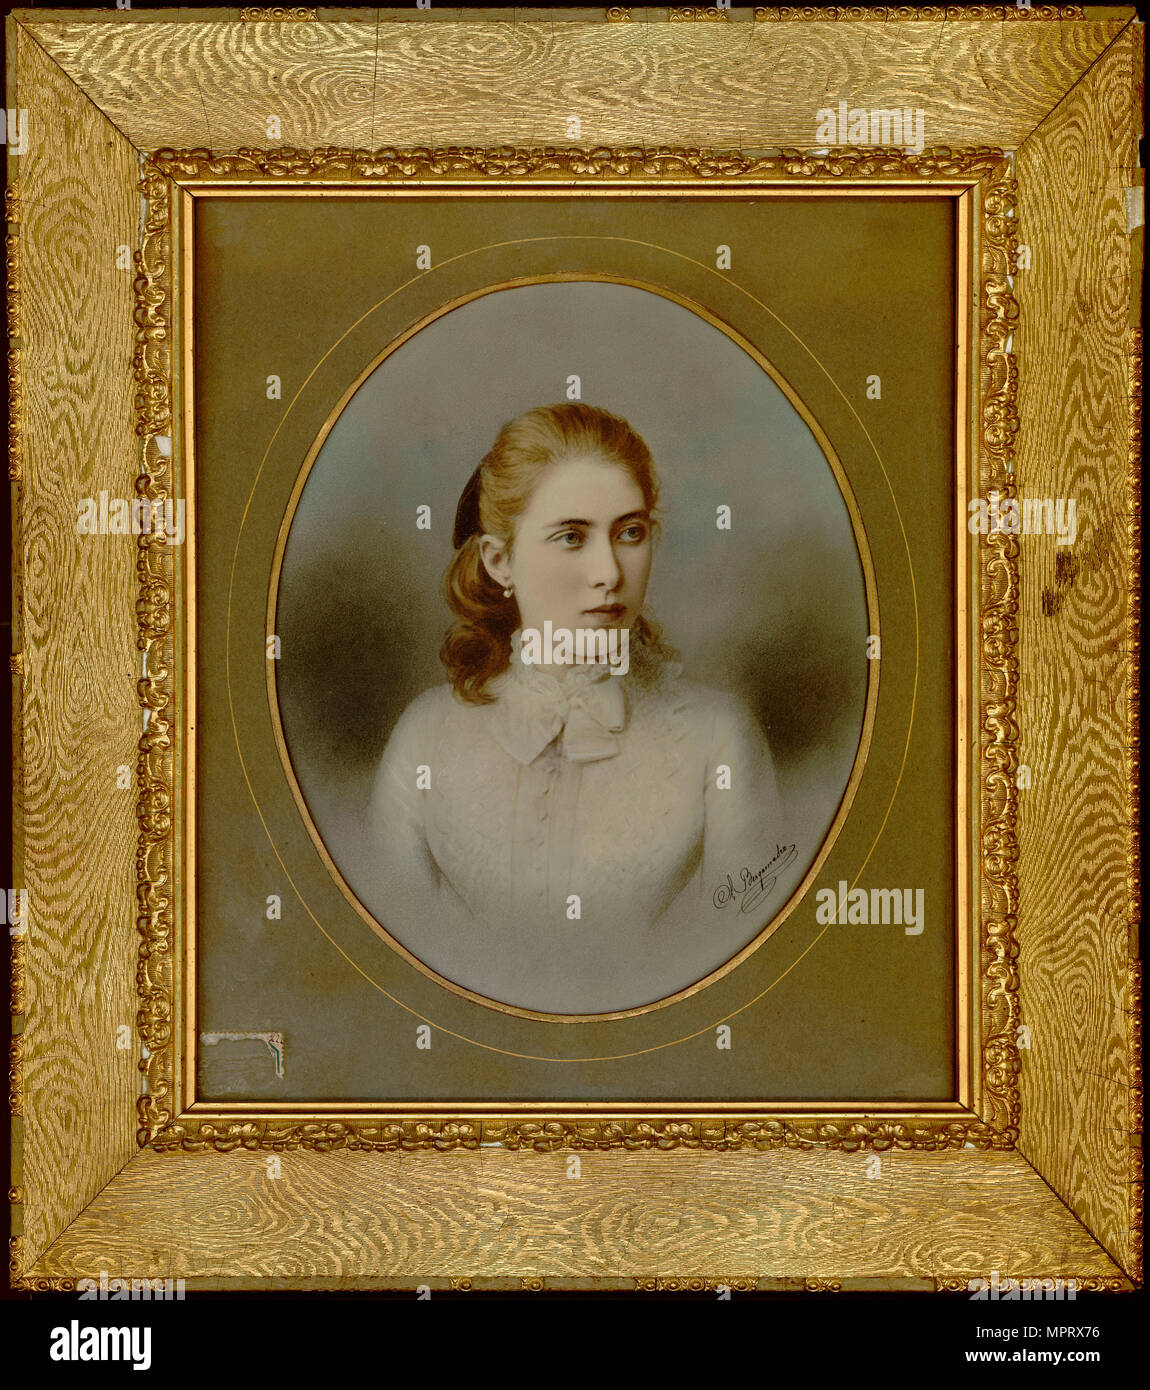 Portrait of Countess Tatyana Nikolayevna Yusupova (1866-1888). Stock Photo